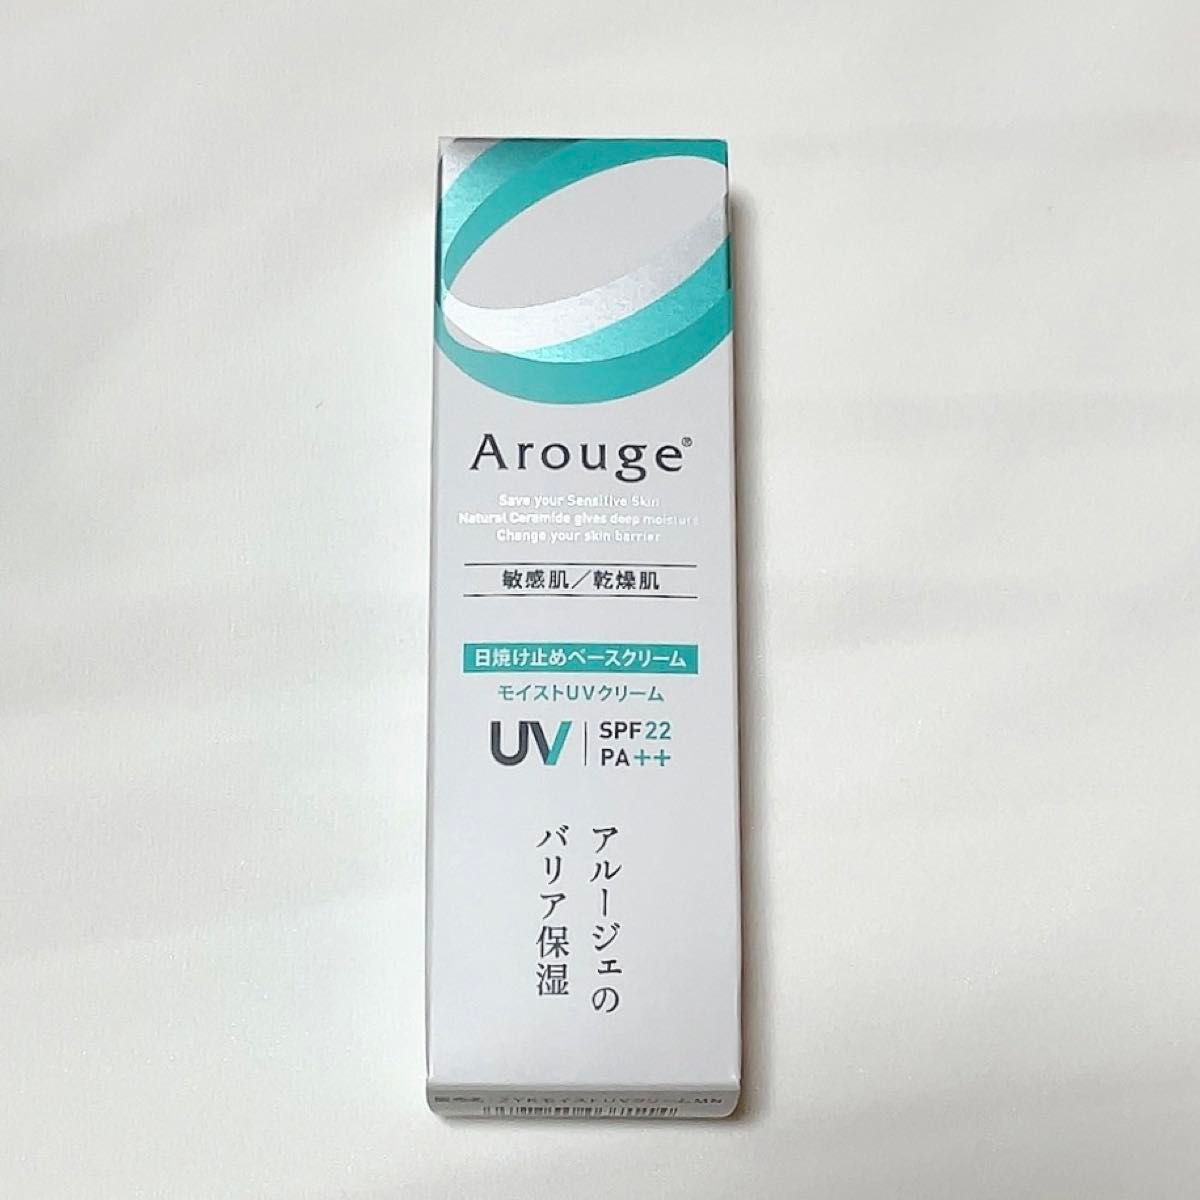 【Arouge】アルージェ / モイストUVクリーム